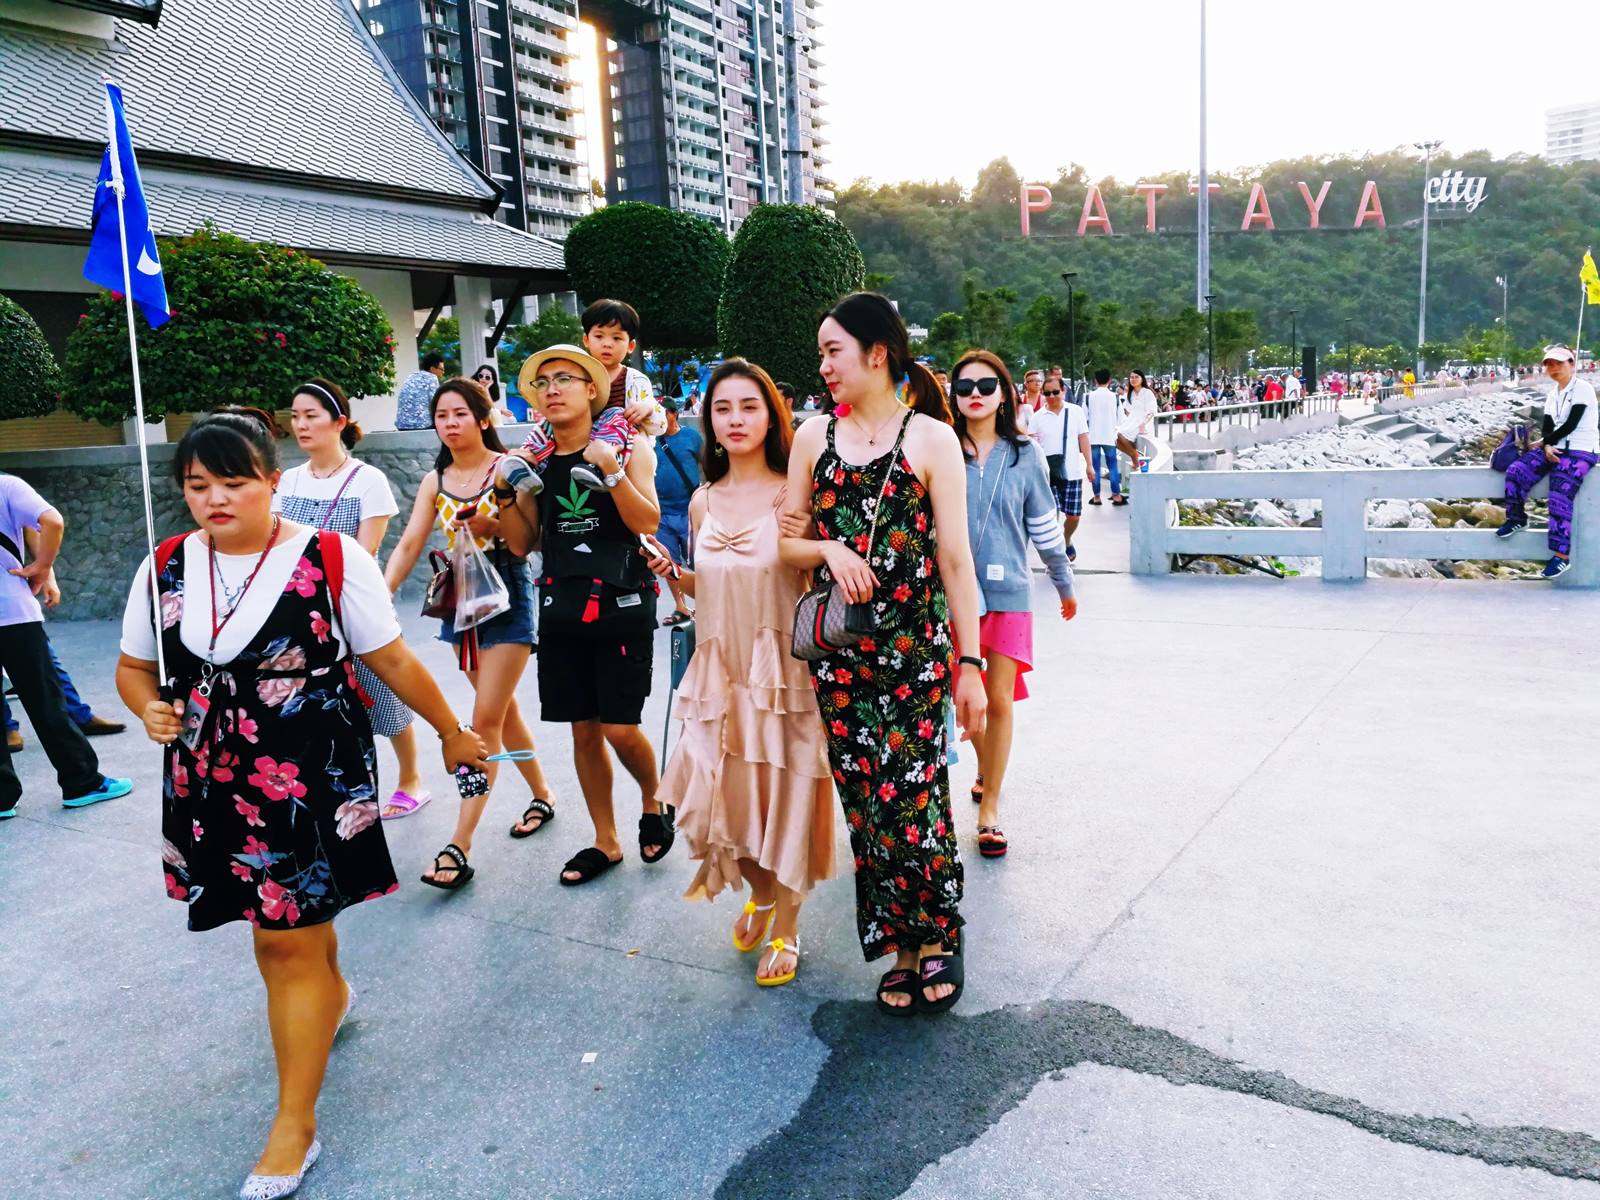 Touristes chinois dans la station balnéaire de Pattaya